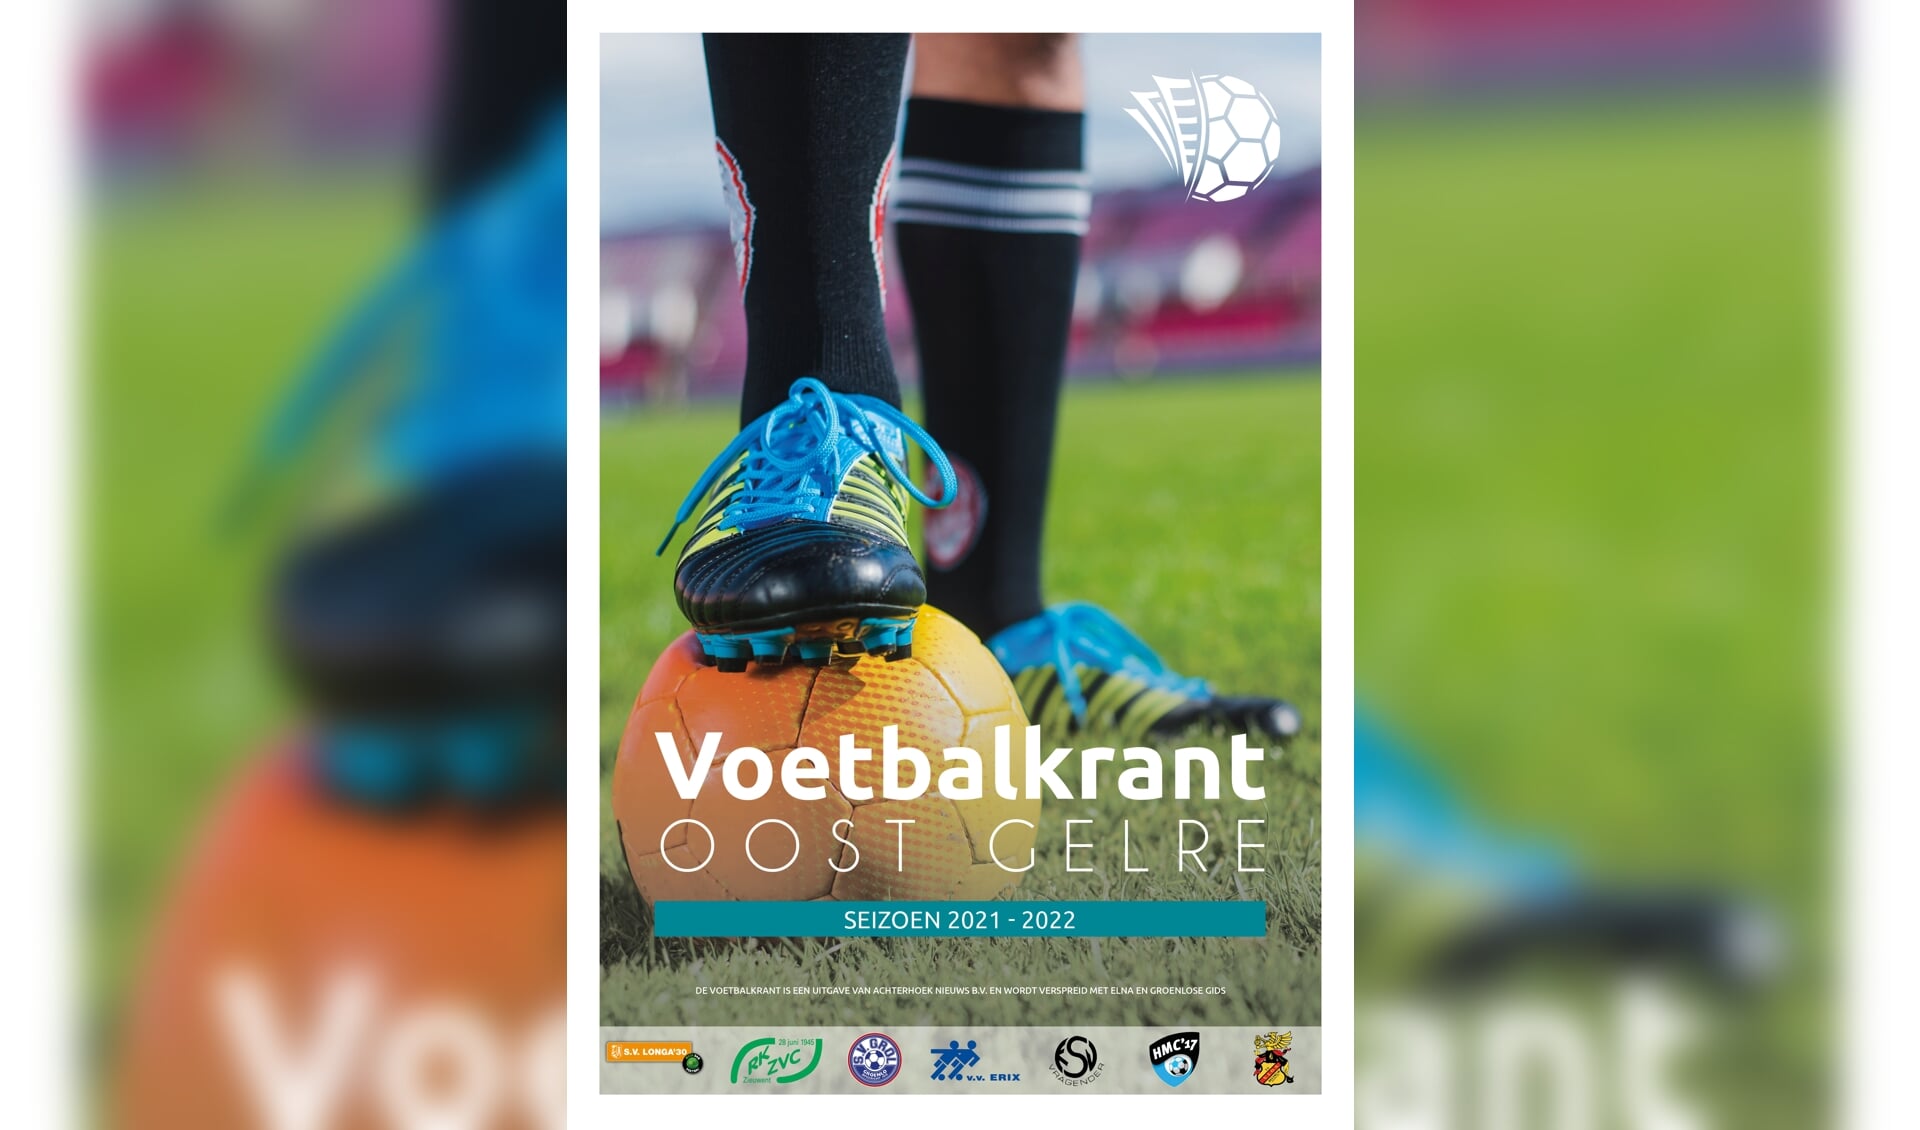  De cover van de nieuwe Voetbalkrant seizoen 2021-2022. Ontwerp: Liesbeth Klein Hulse 